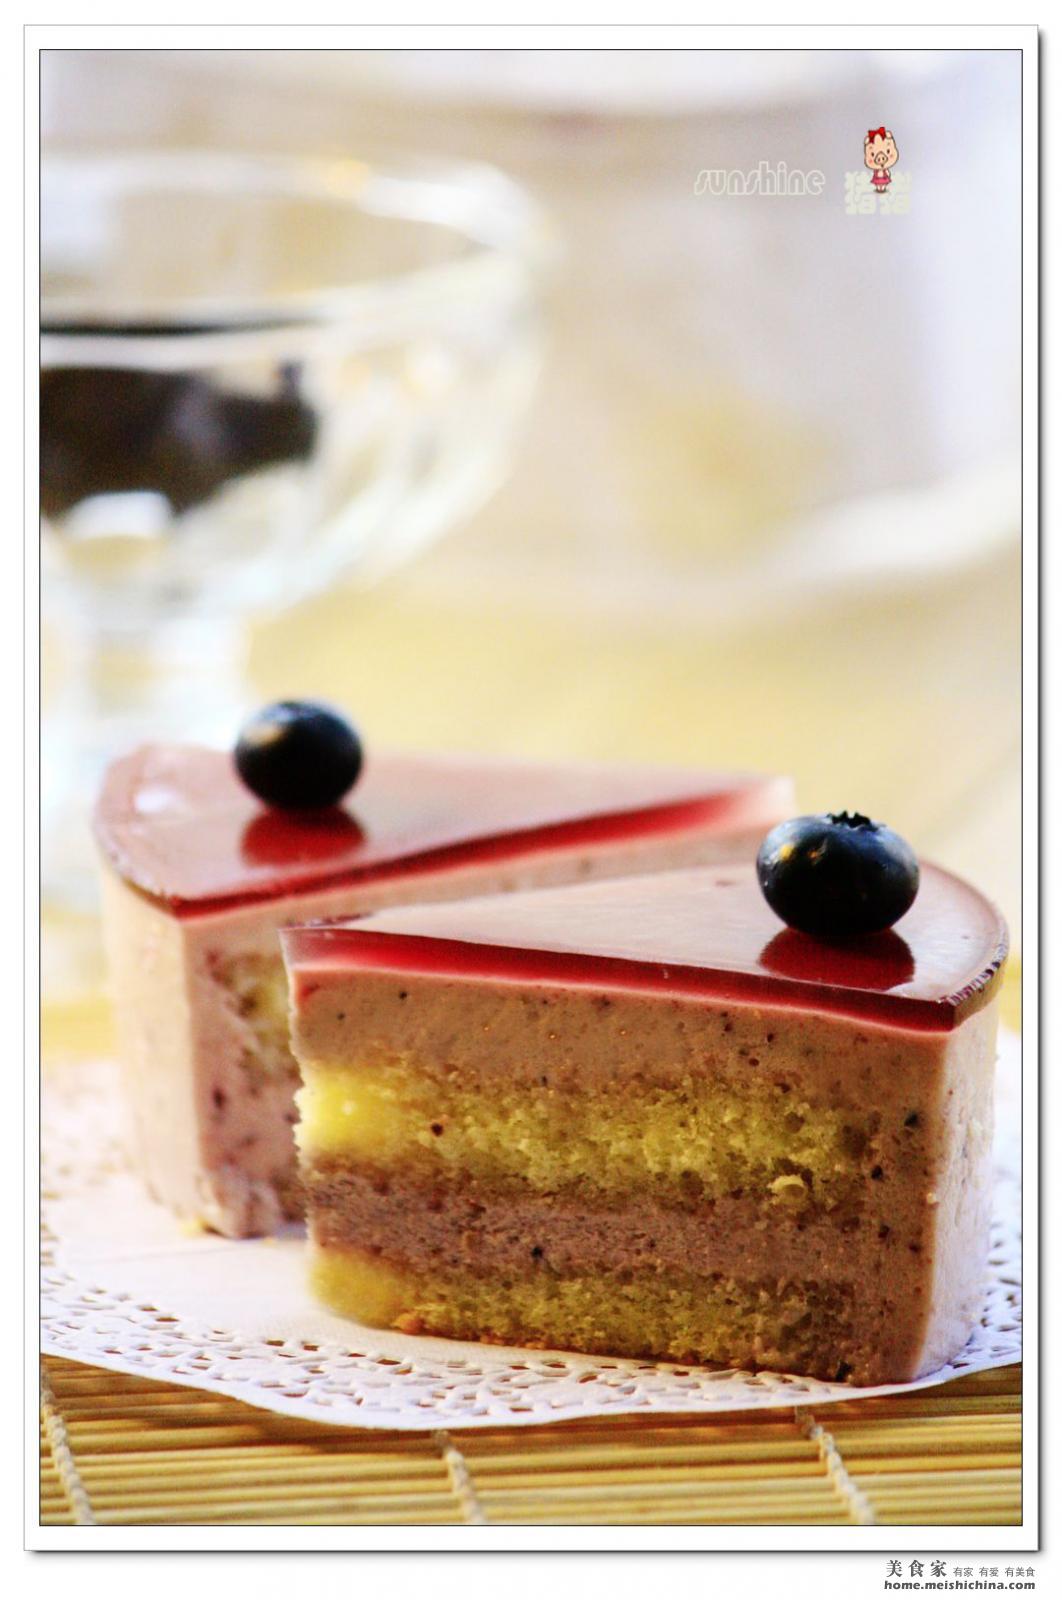 厨苑食谱: 蓝莓慕斯蛋糕 Blueberry Mousse Cake